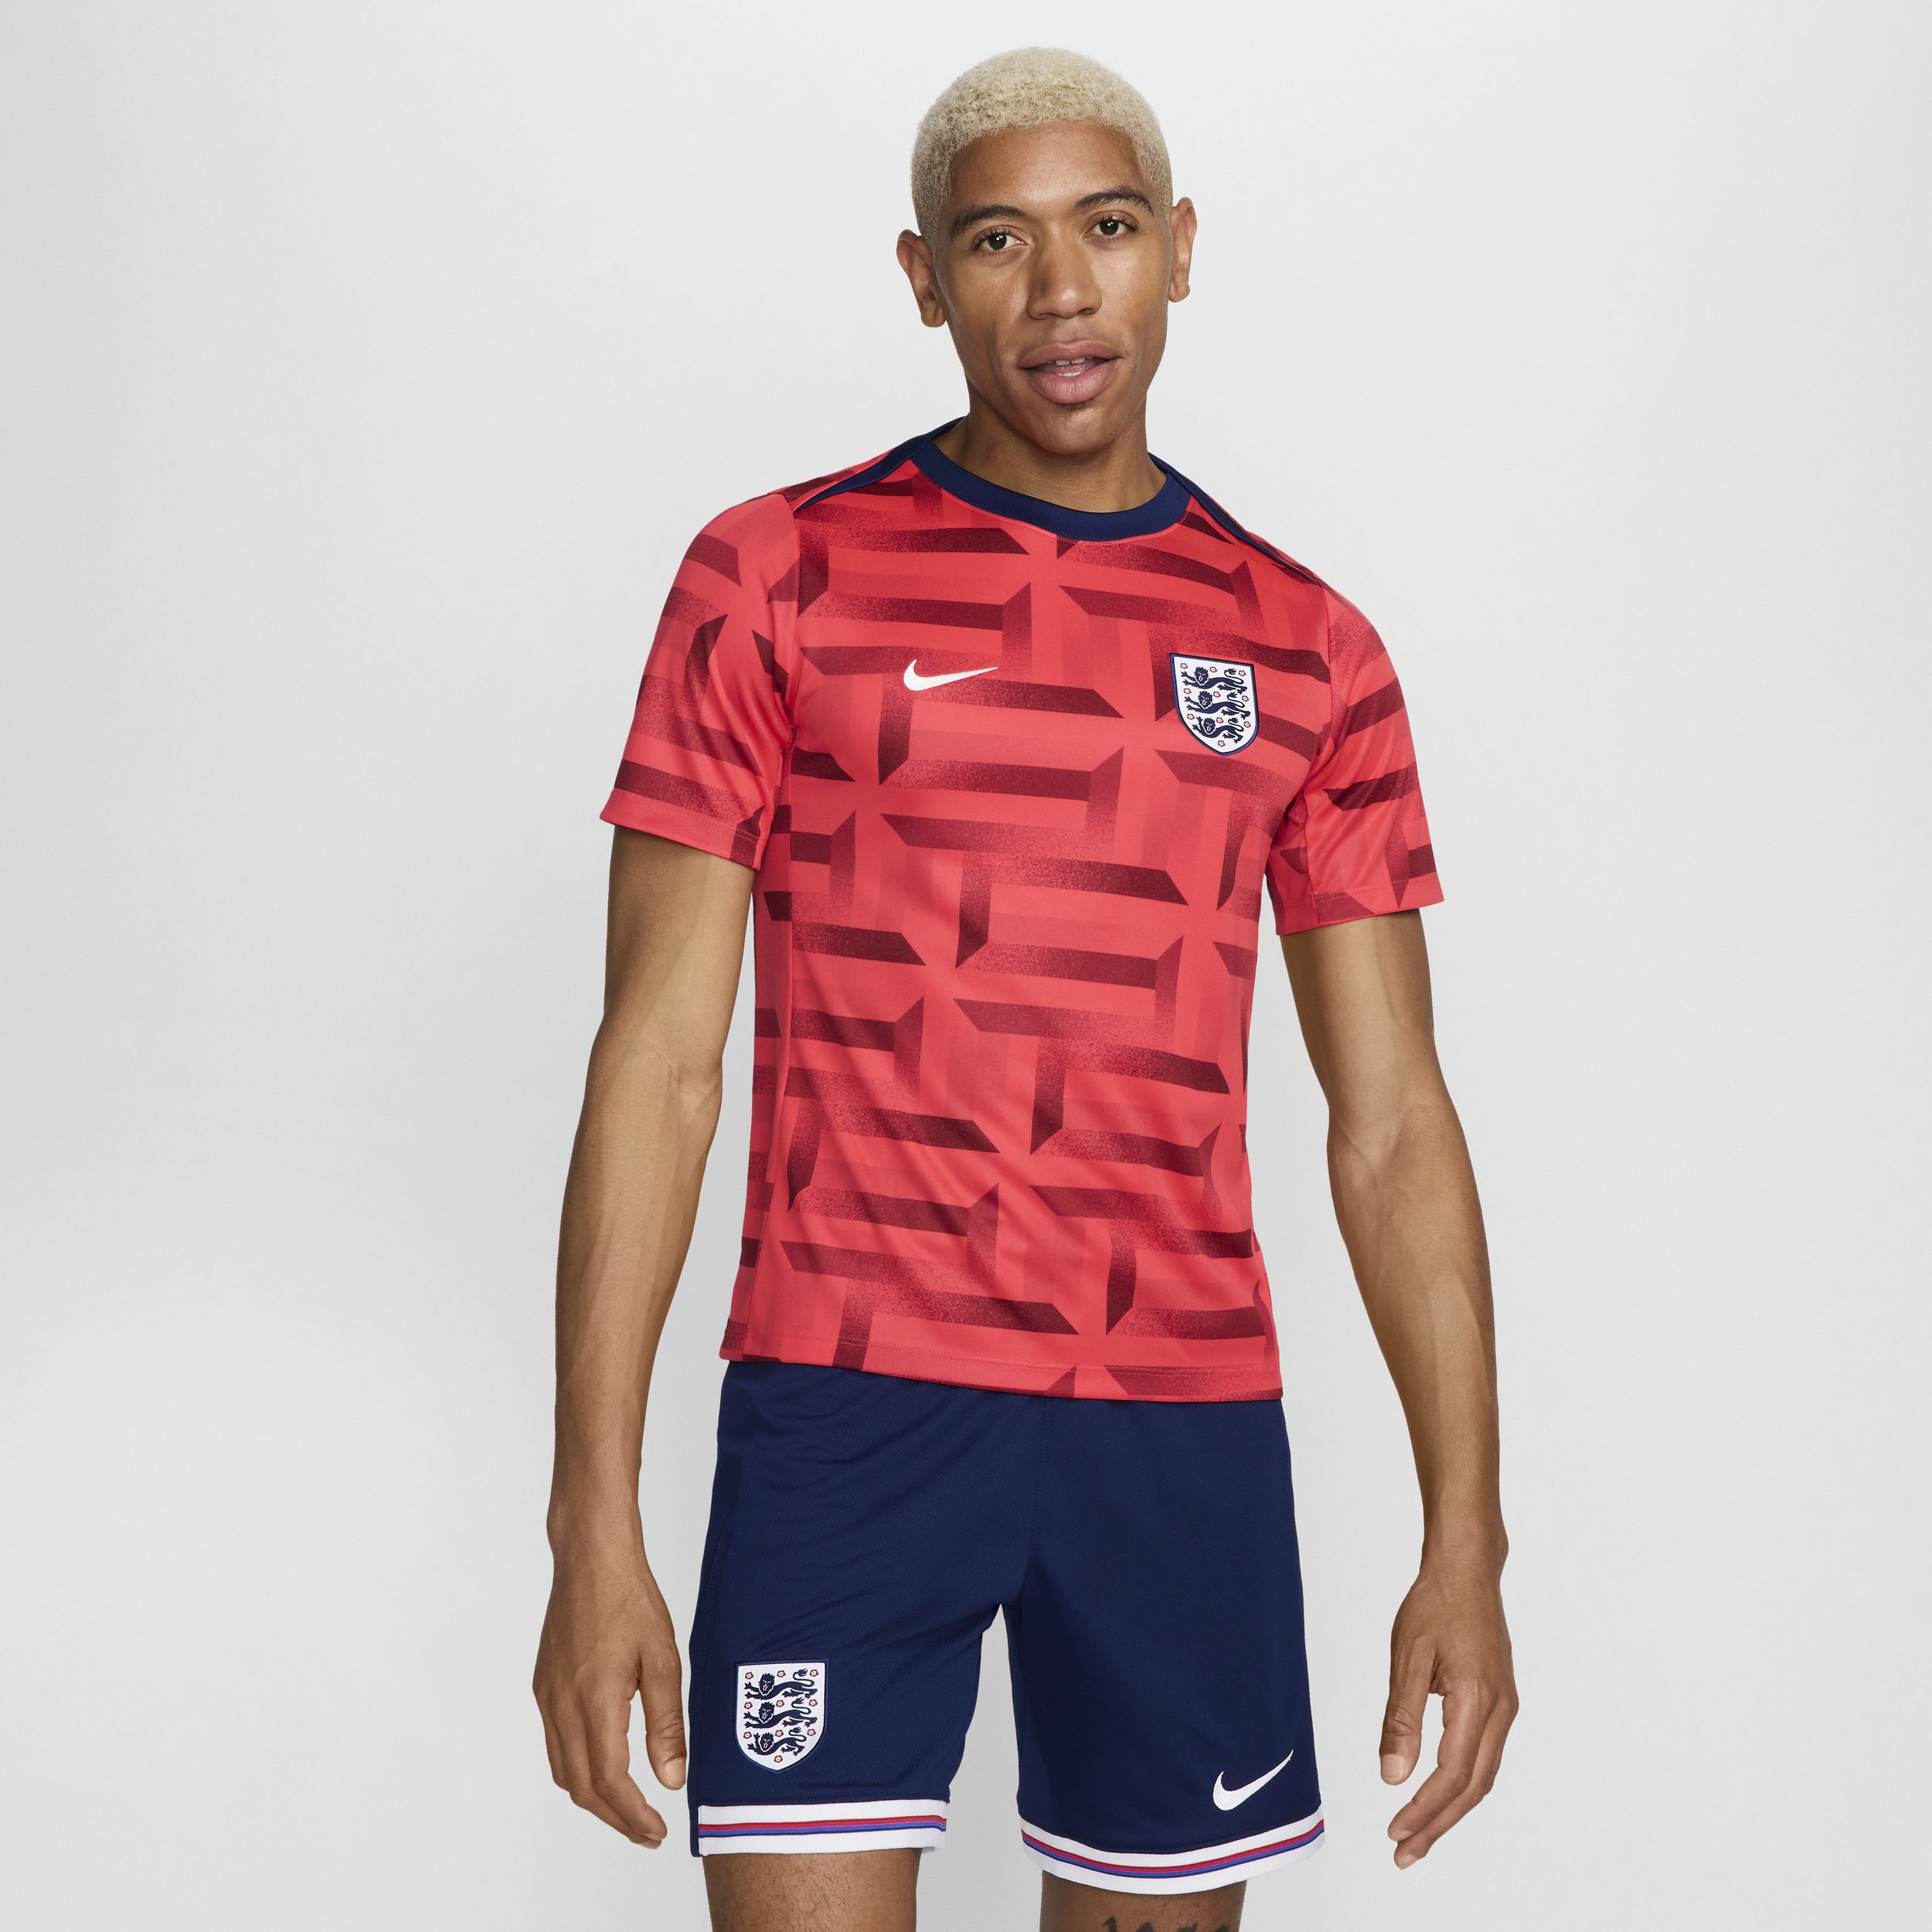 Maglia da calcio pre-partita a manica corta Nike Dri-FIT Inghilterra Academy Pro – Uomo - Rosso